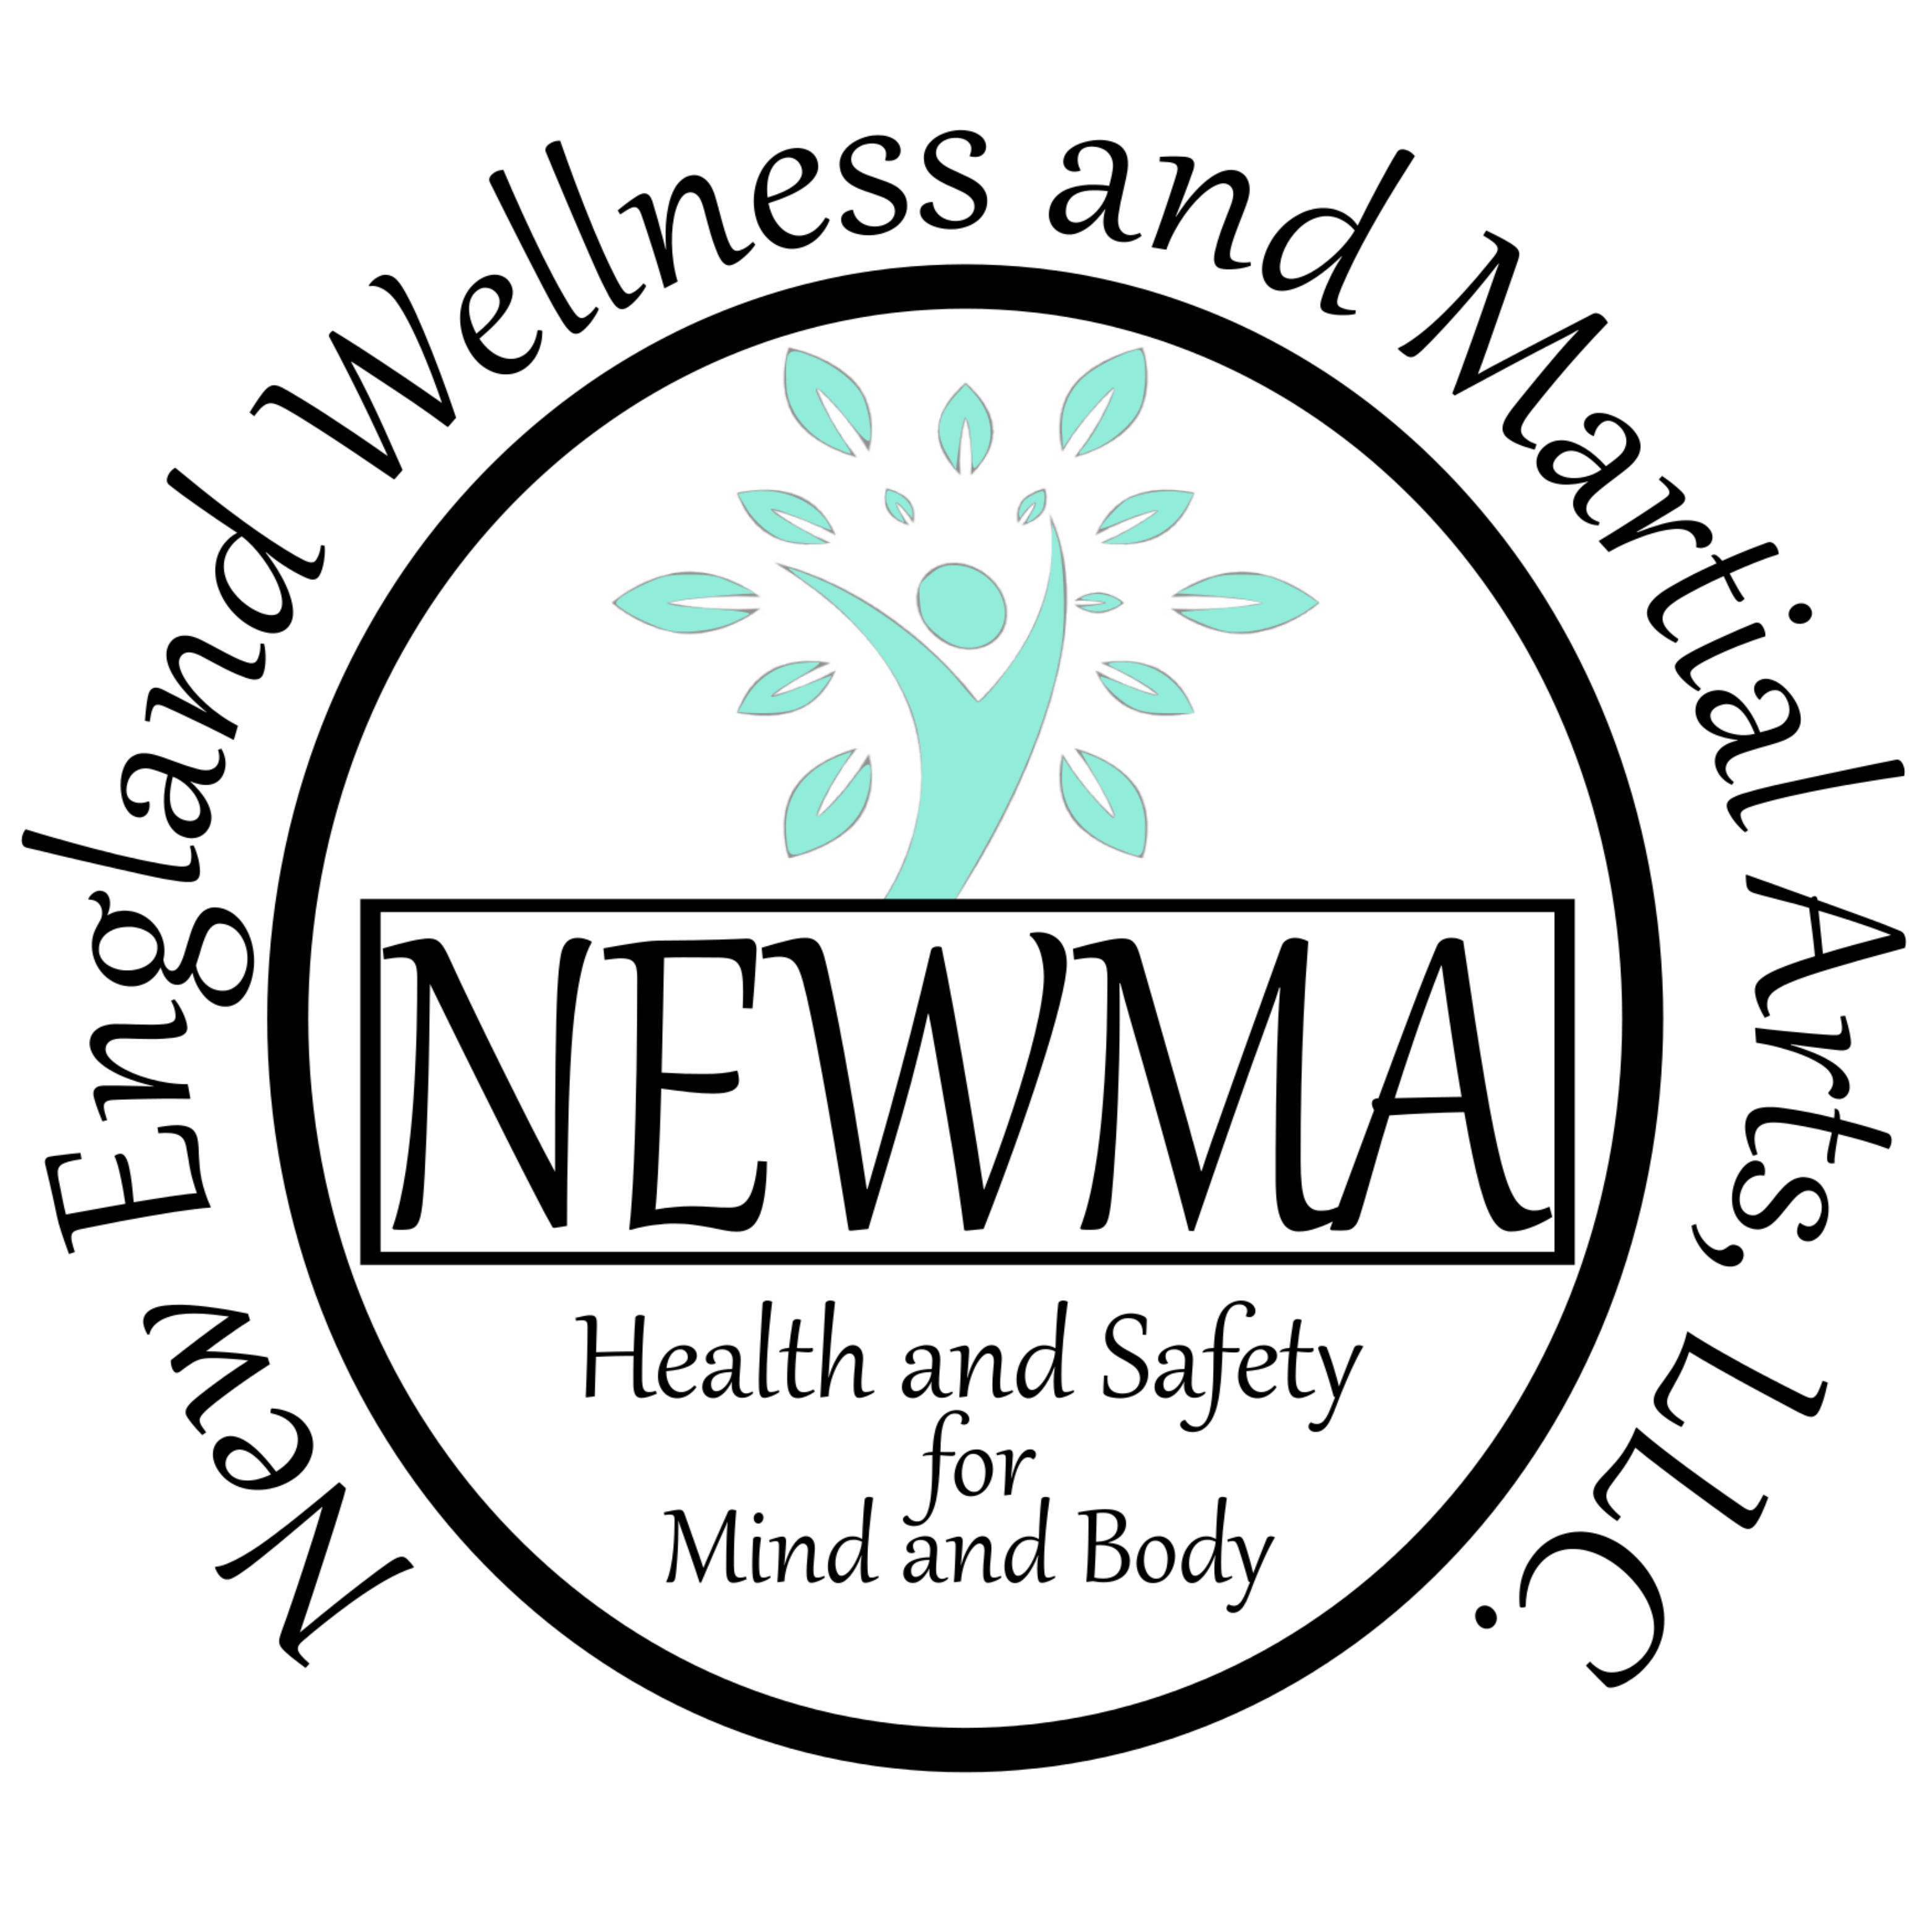 NEWMA Logo - Parent Company